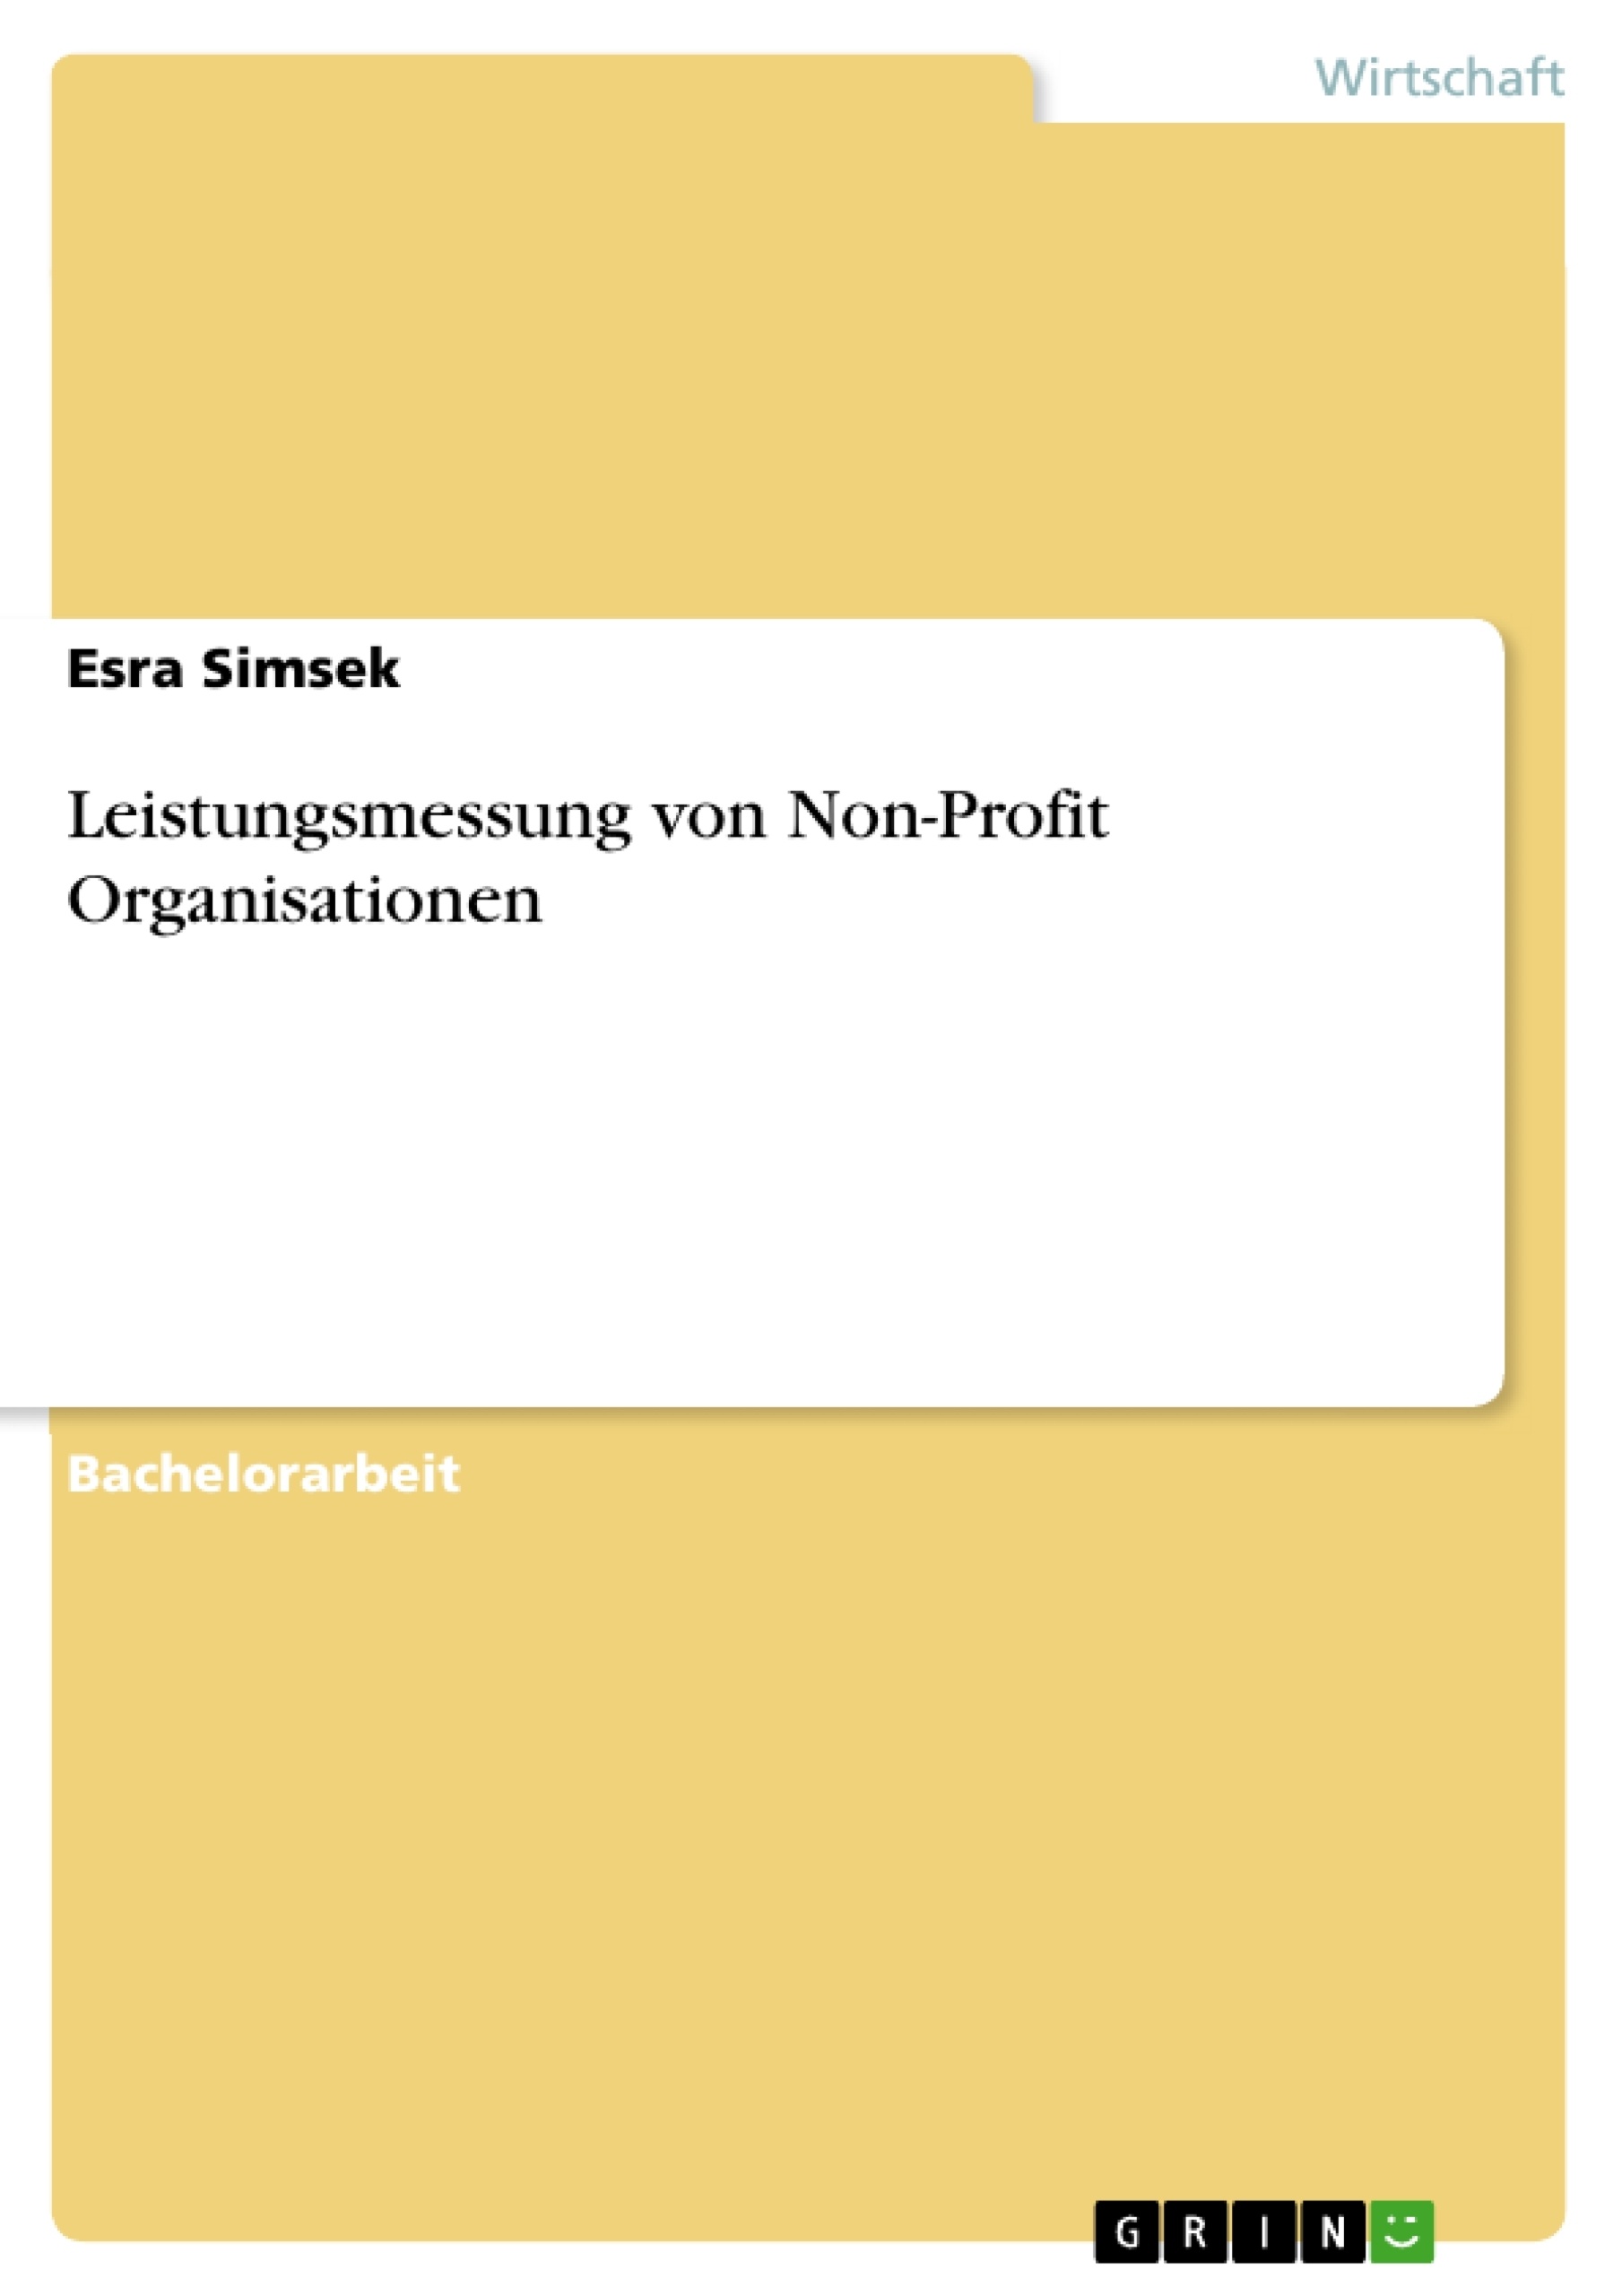 Title: Leistungsmessung von Non-Profit Organisationen